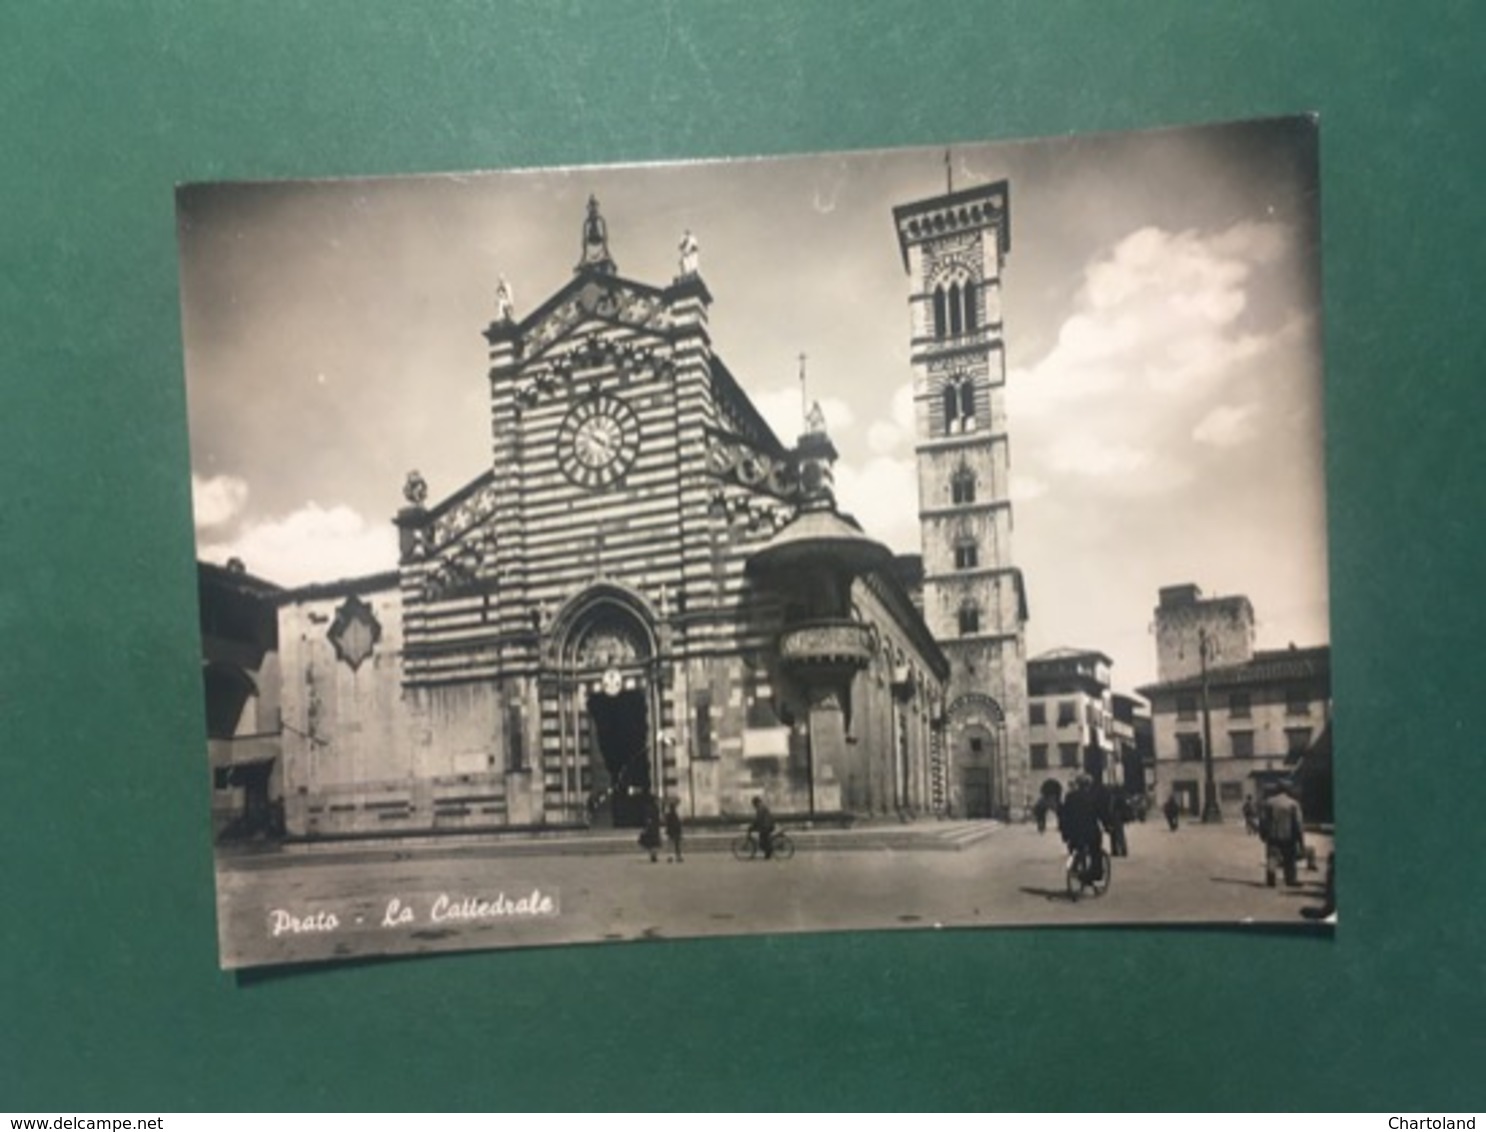 Cartolina Prato - La Cattedrale - 1960 - Firenze